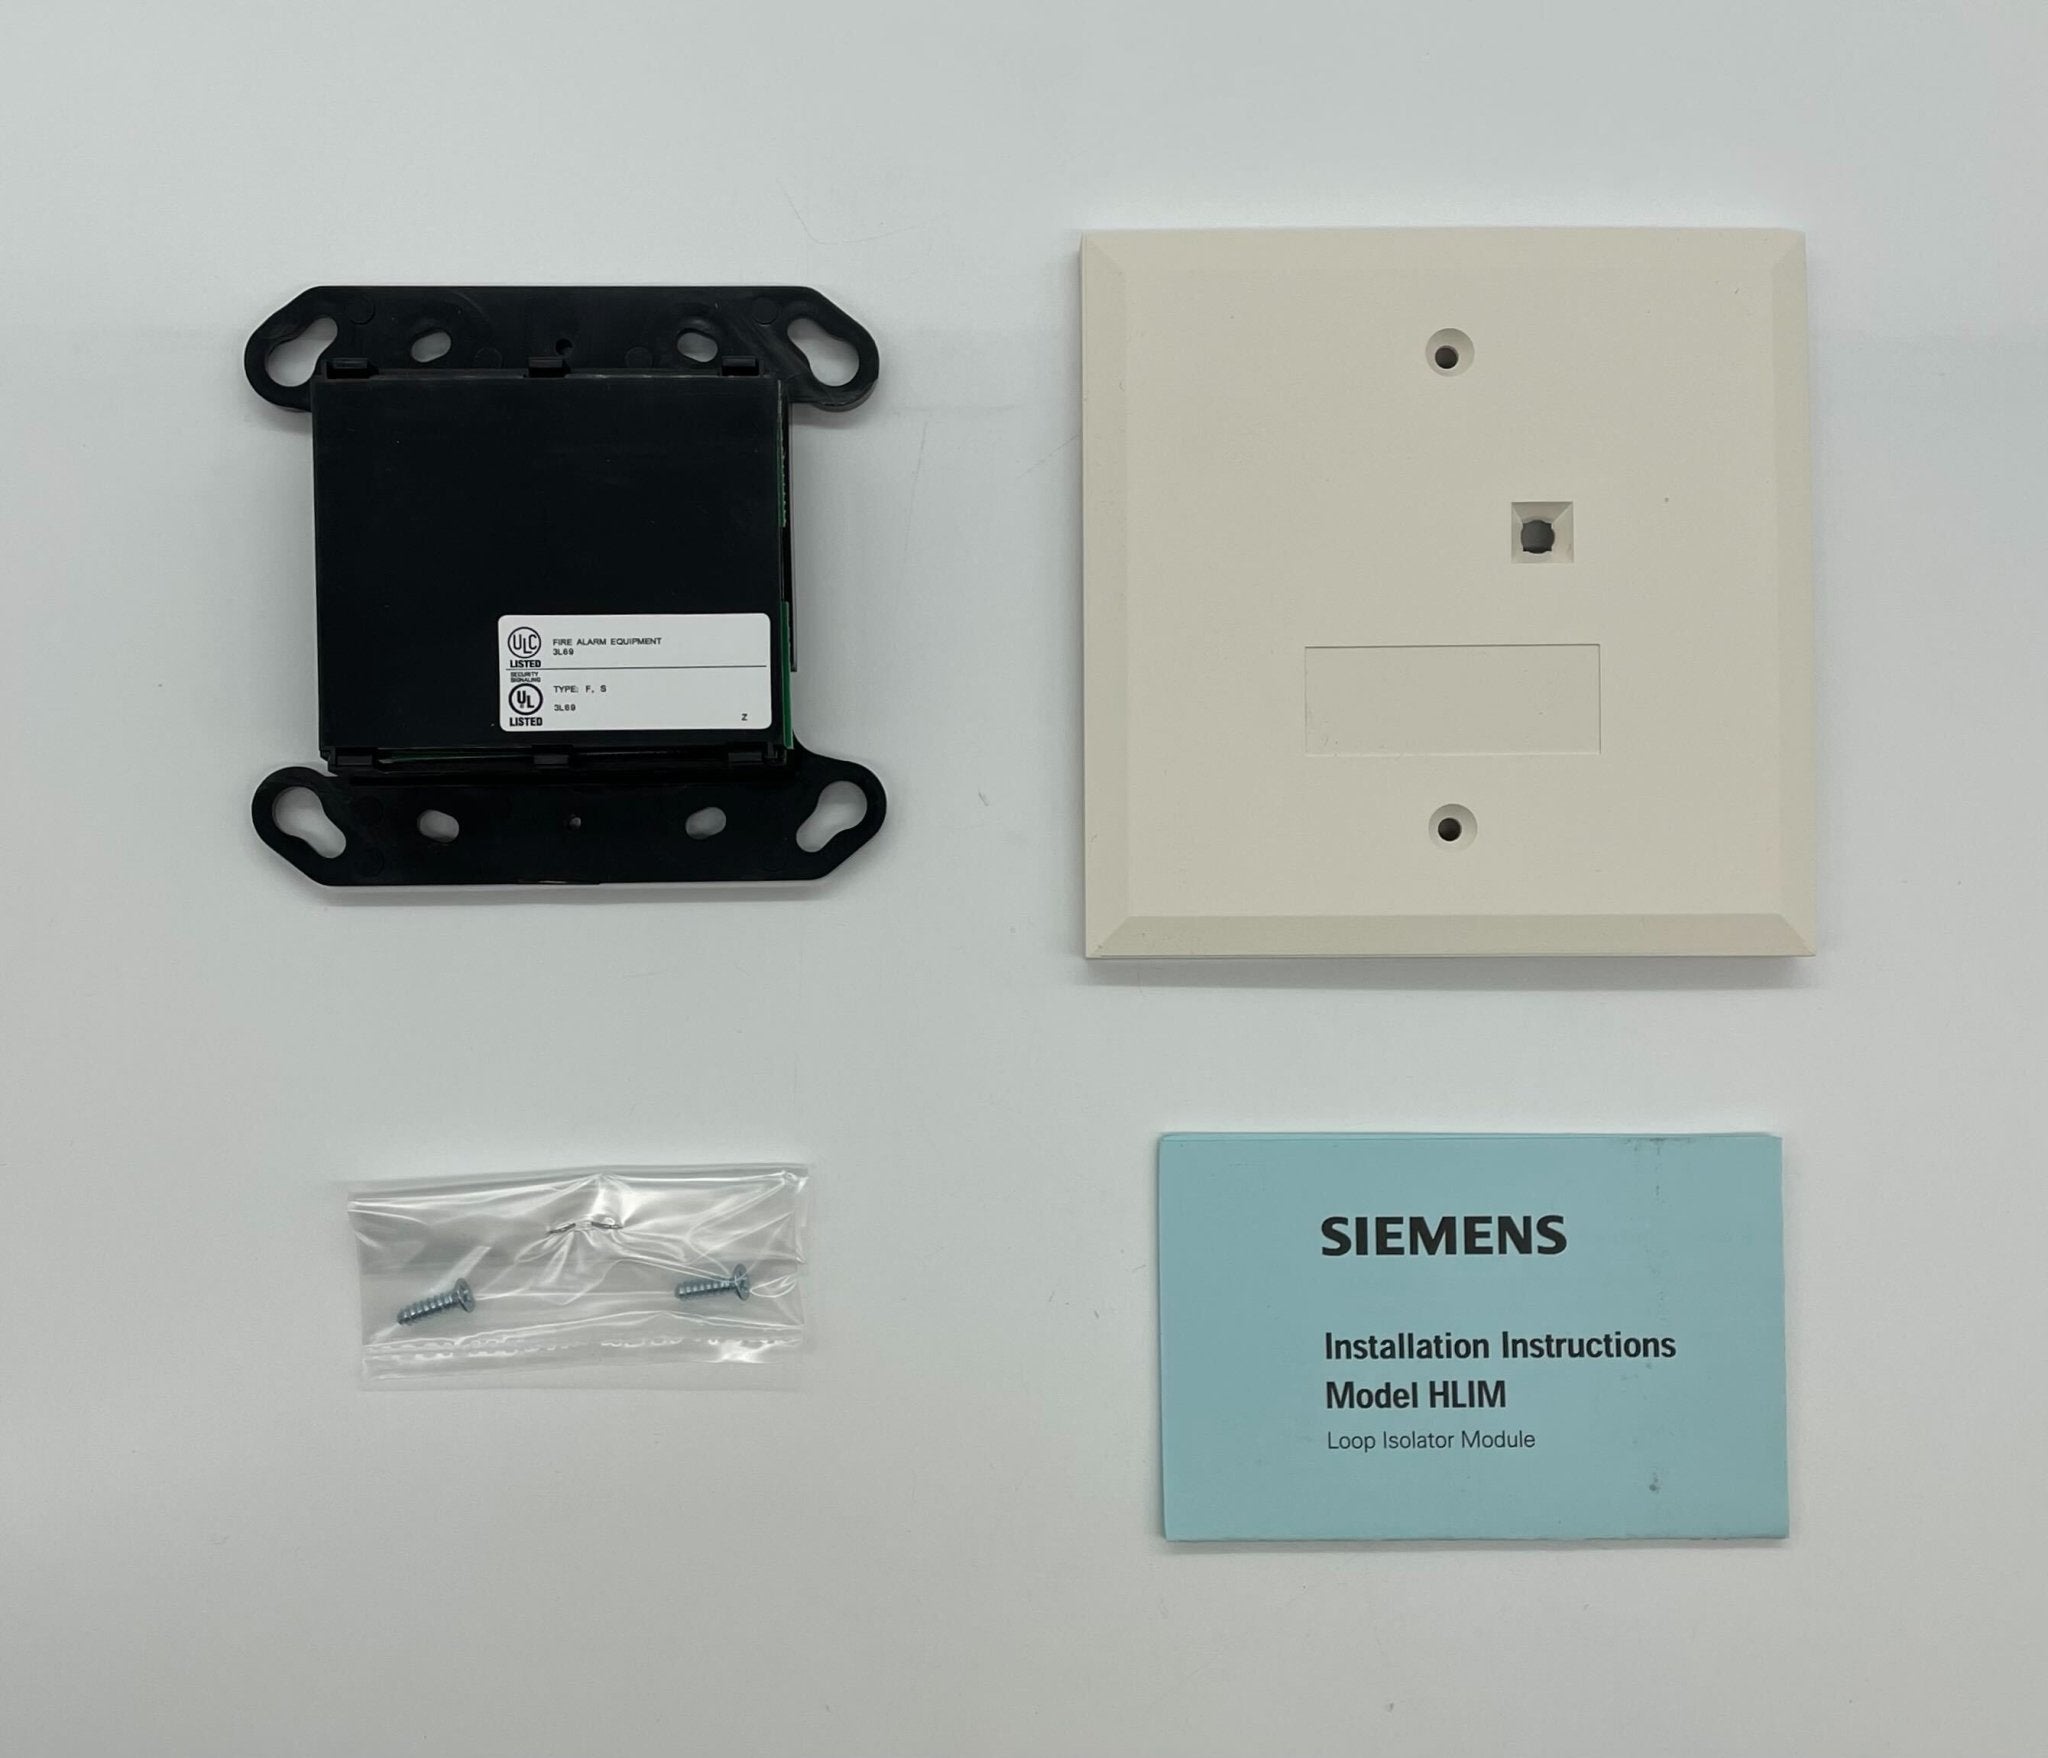 Siemens HLIM - The Fire Alarm Supplier